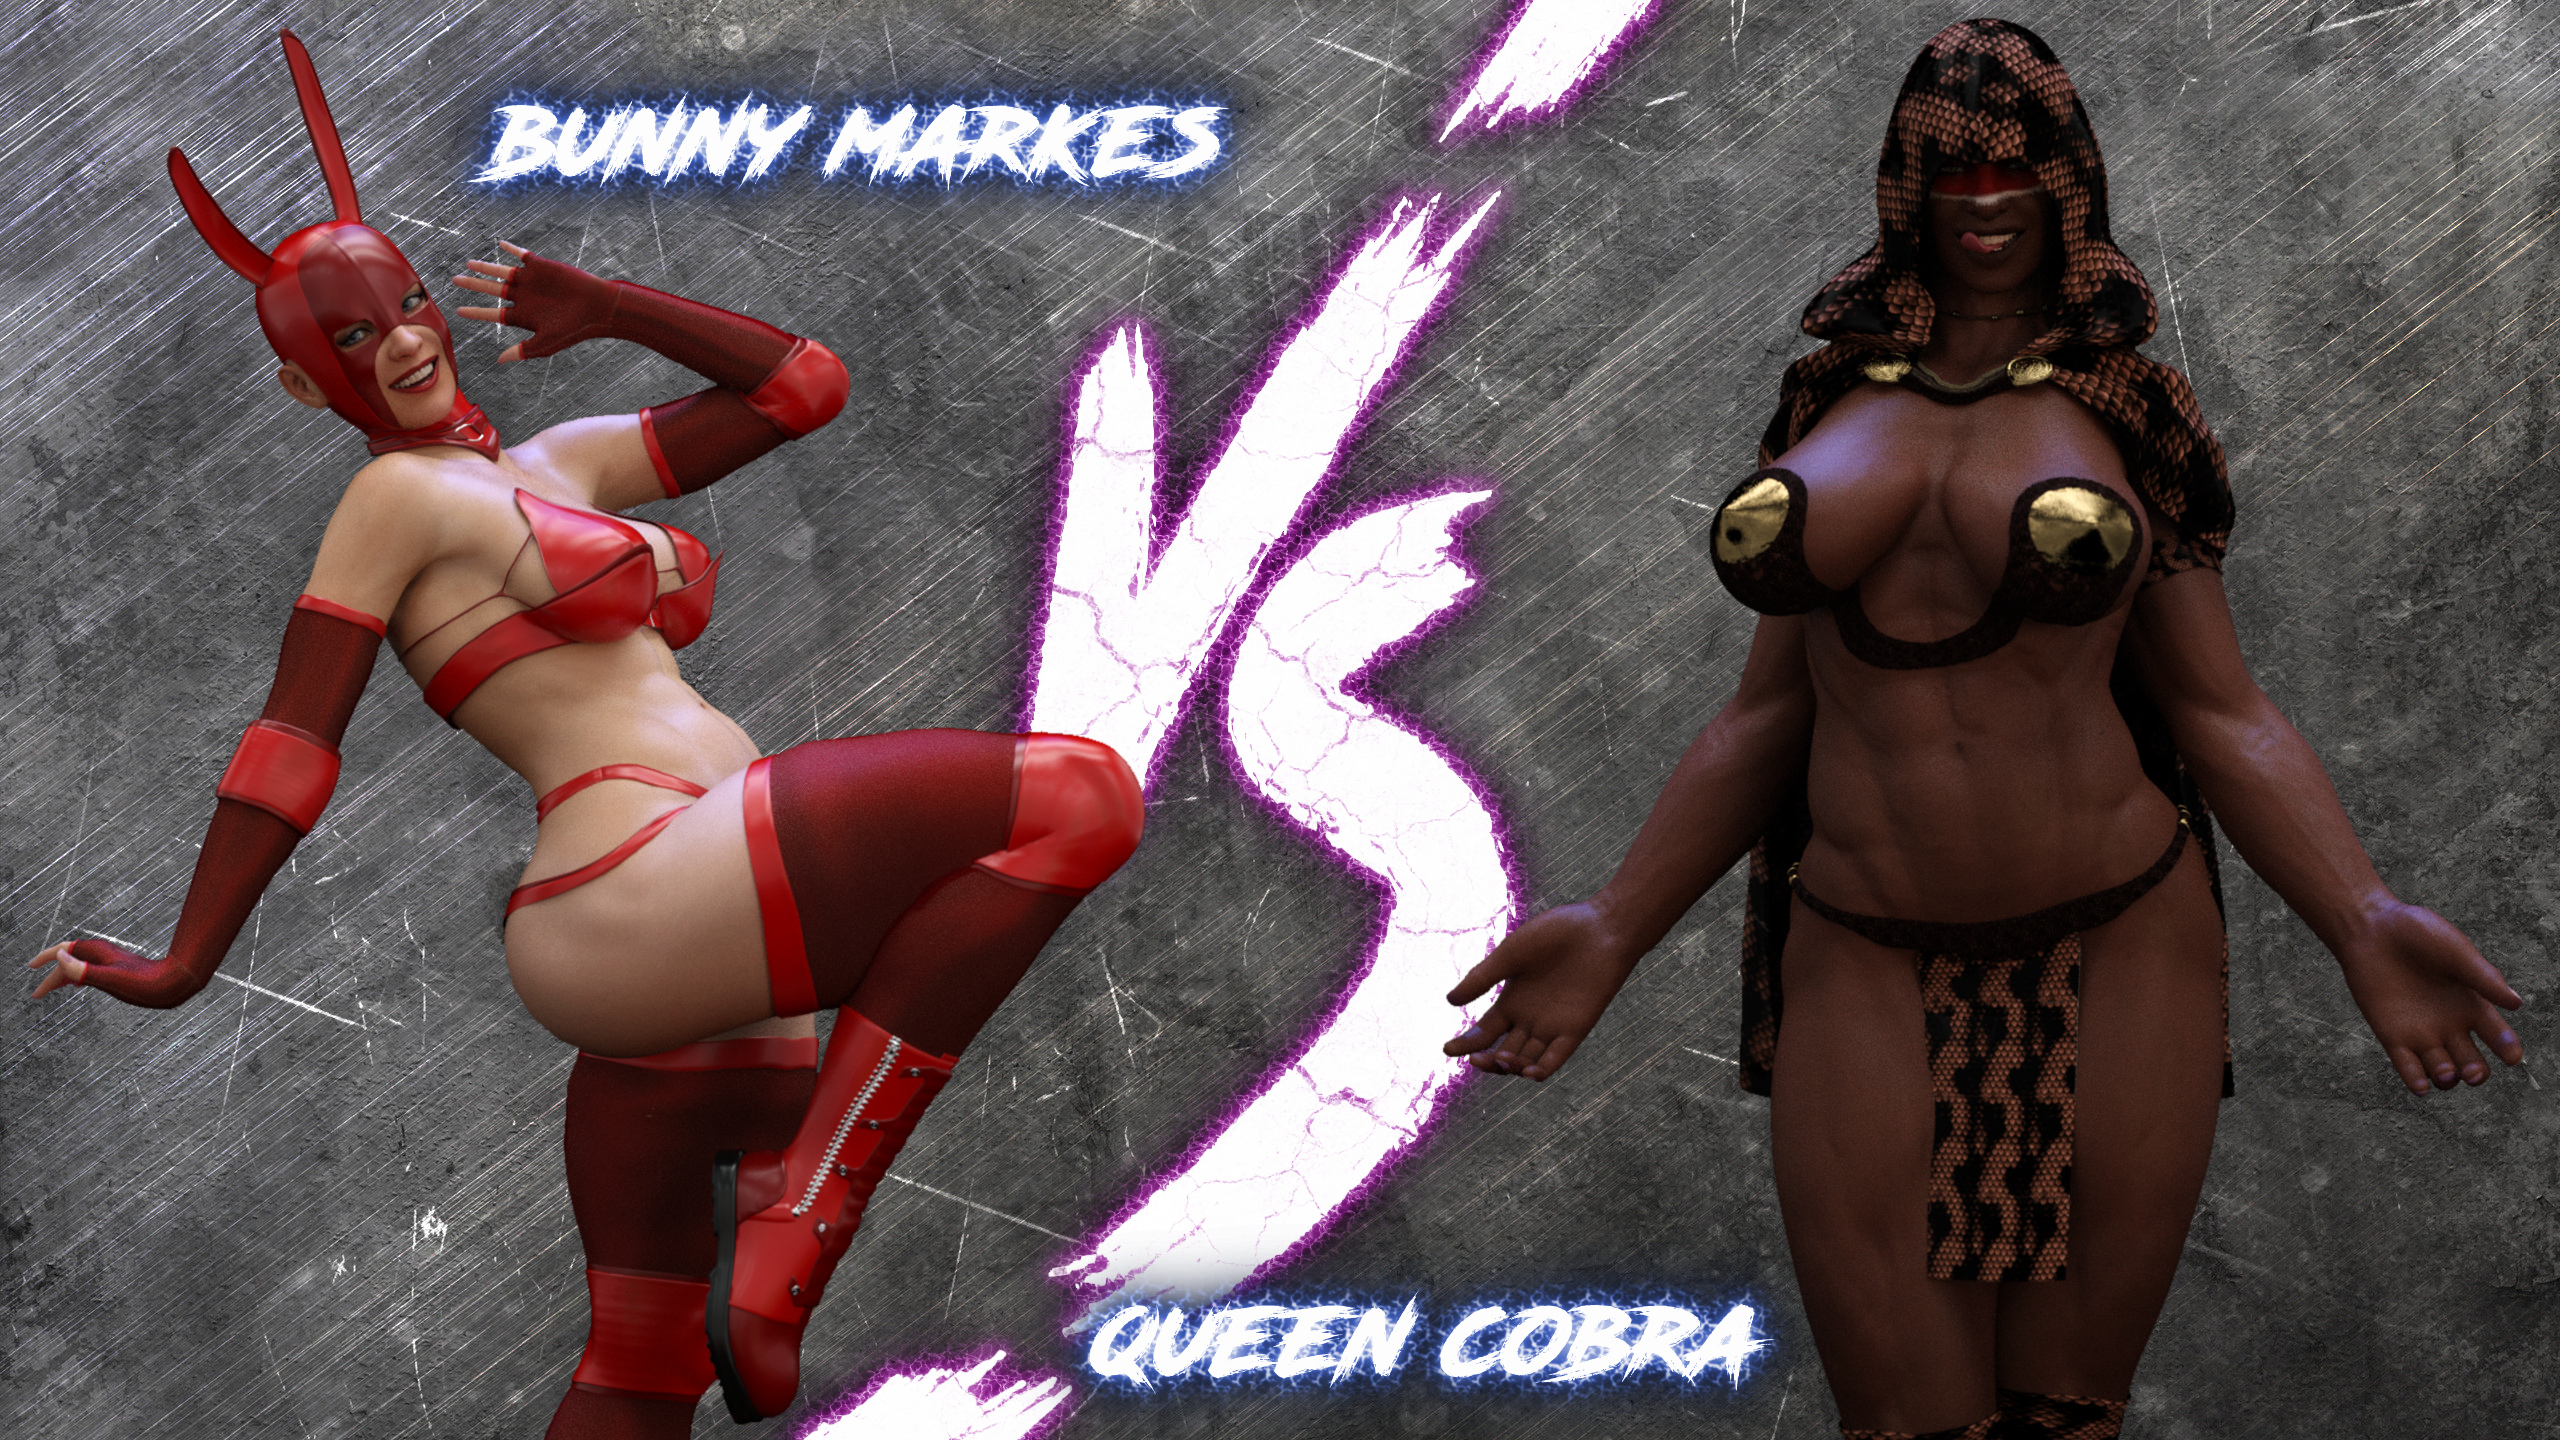 Squarepeg3D – The F.U.T.A. – Bunny Markes vs Queen Cobra